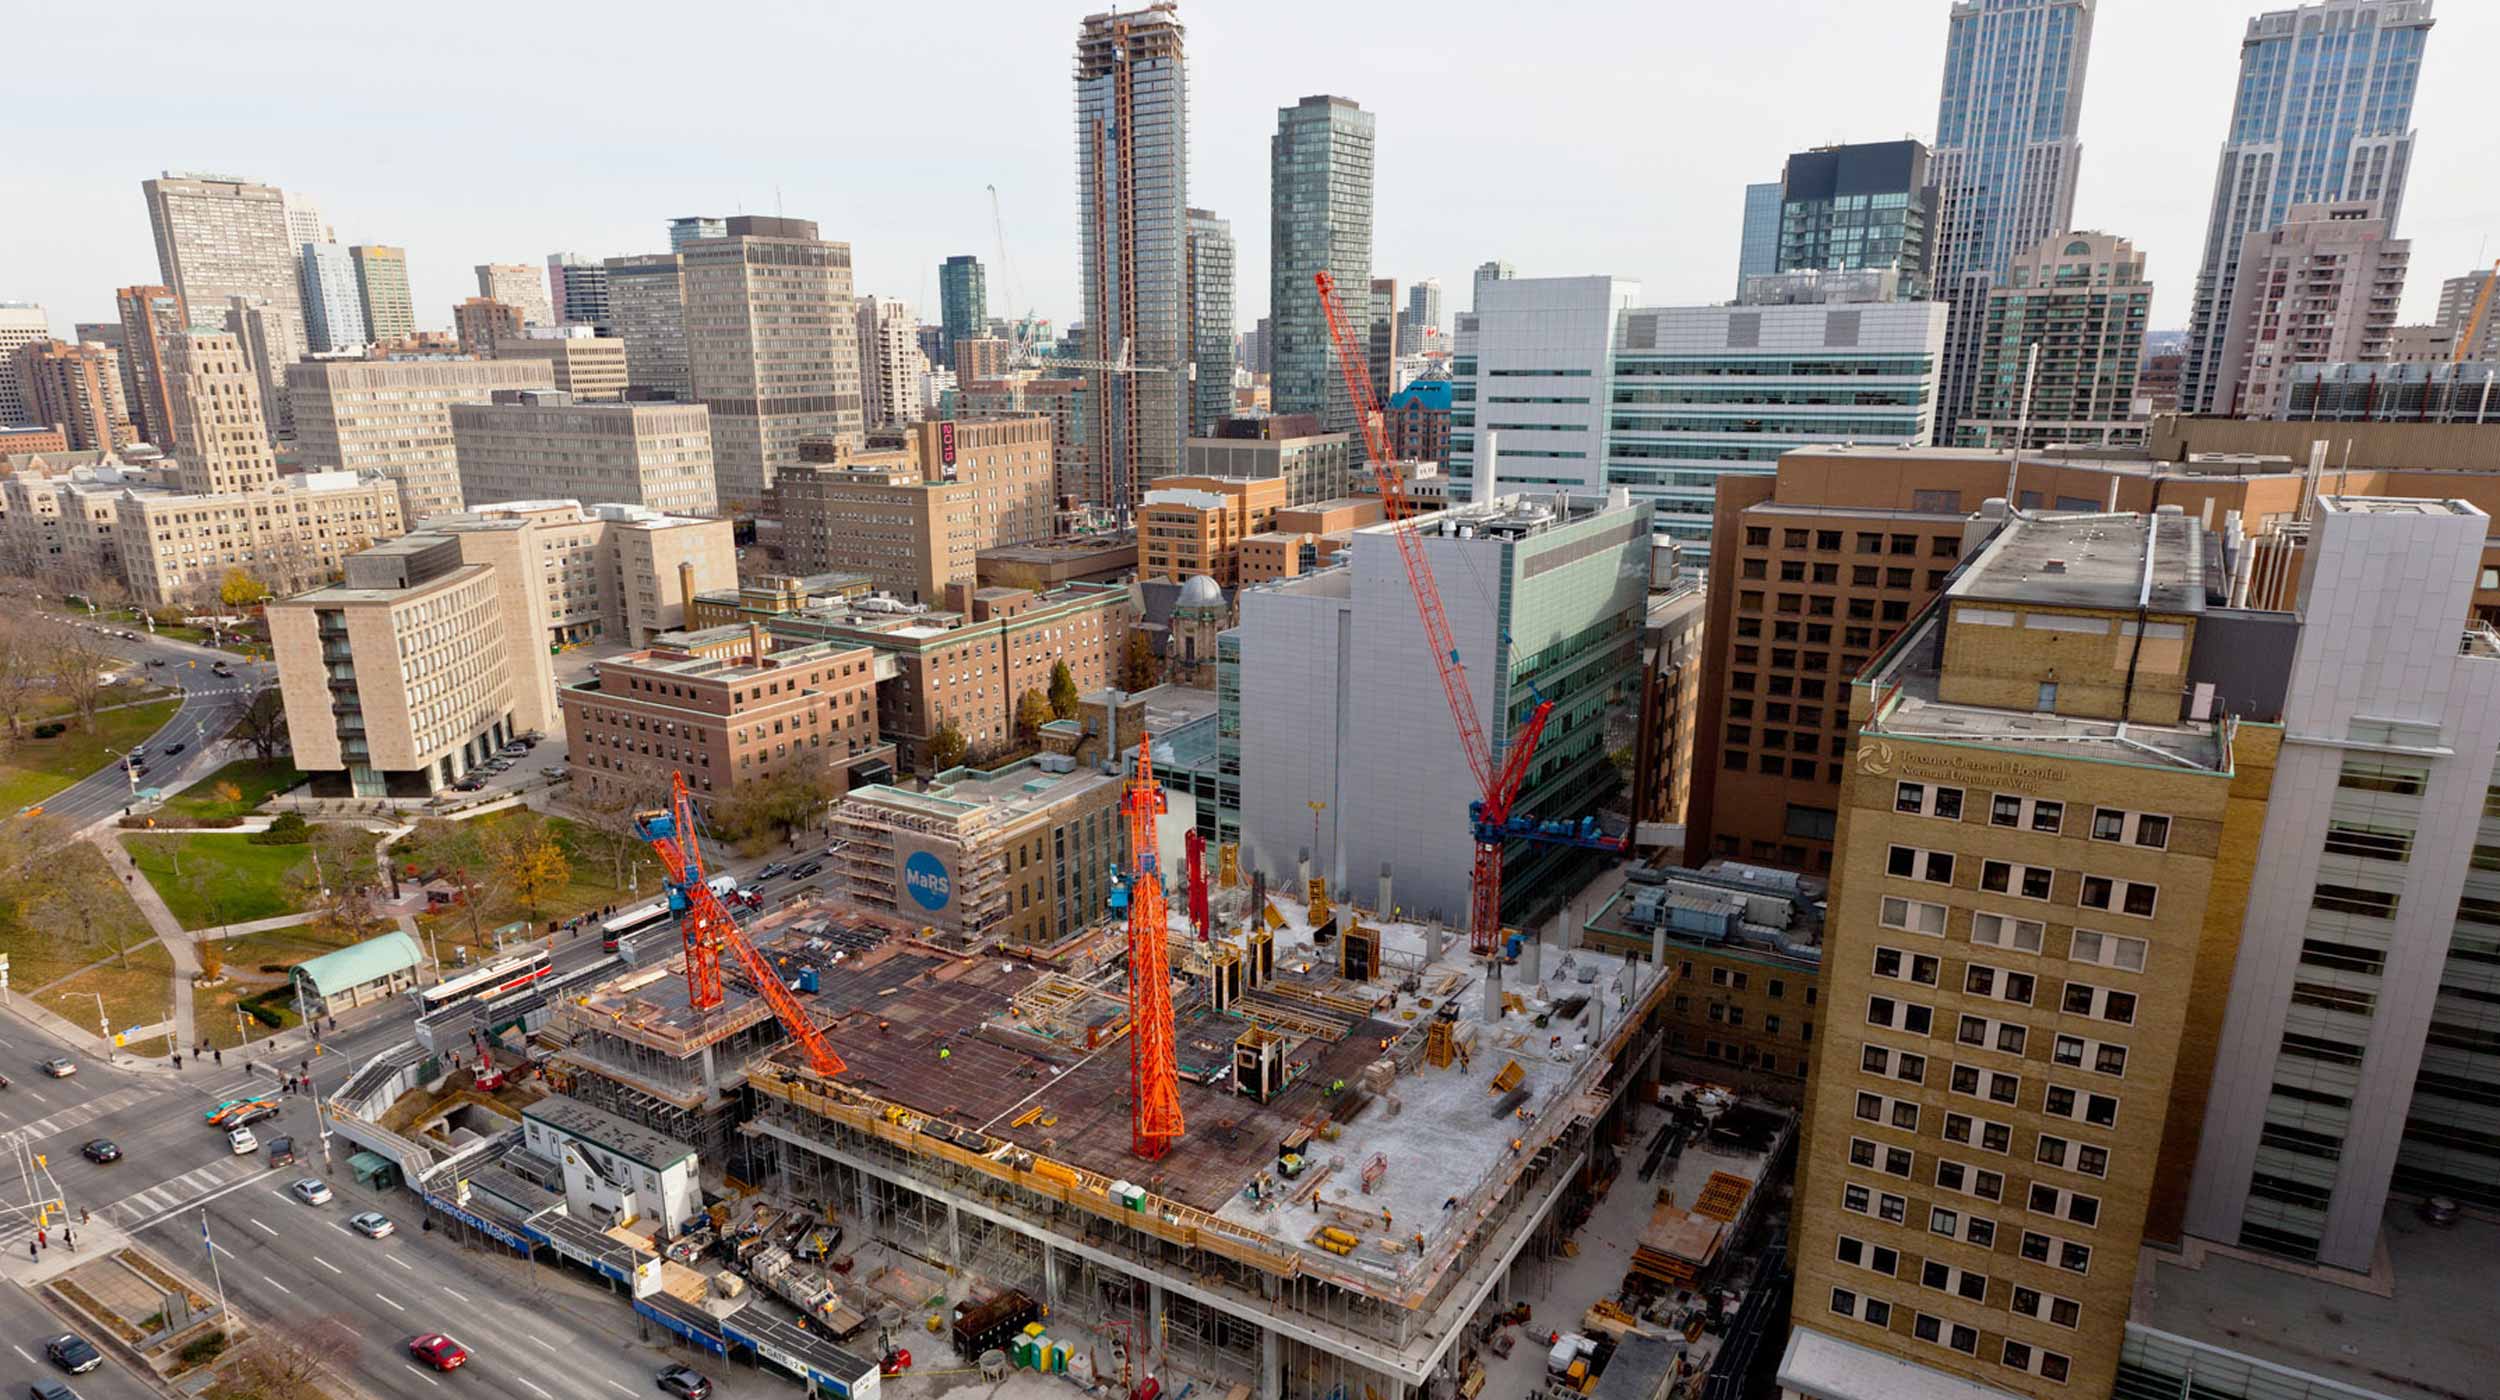 Ubicado en el distrito Discovery de Toronto, la Fase II del Centro MaRs sumará 74.000 m² al complejo ya existente.